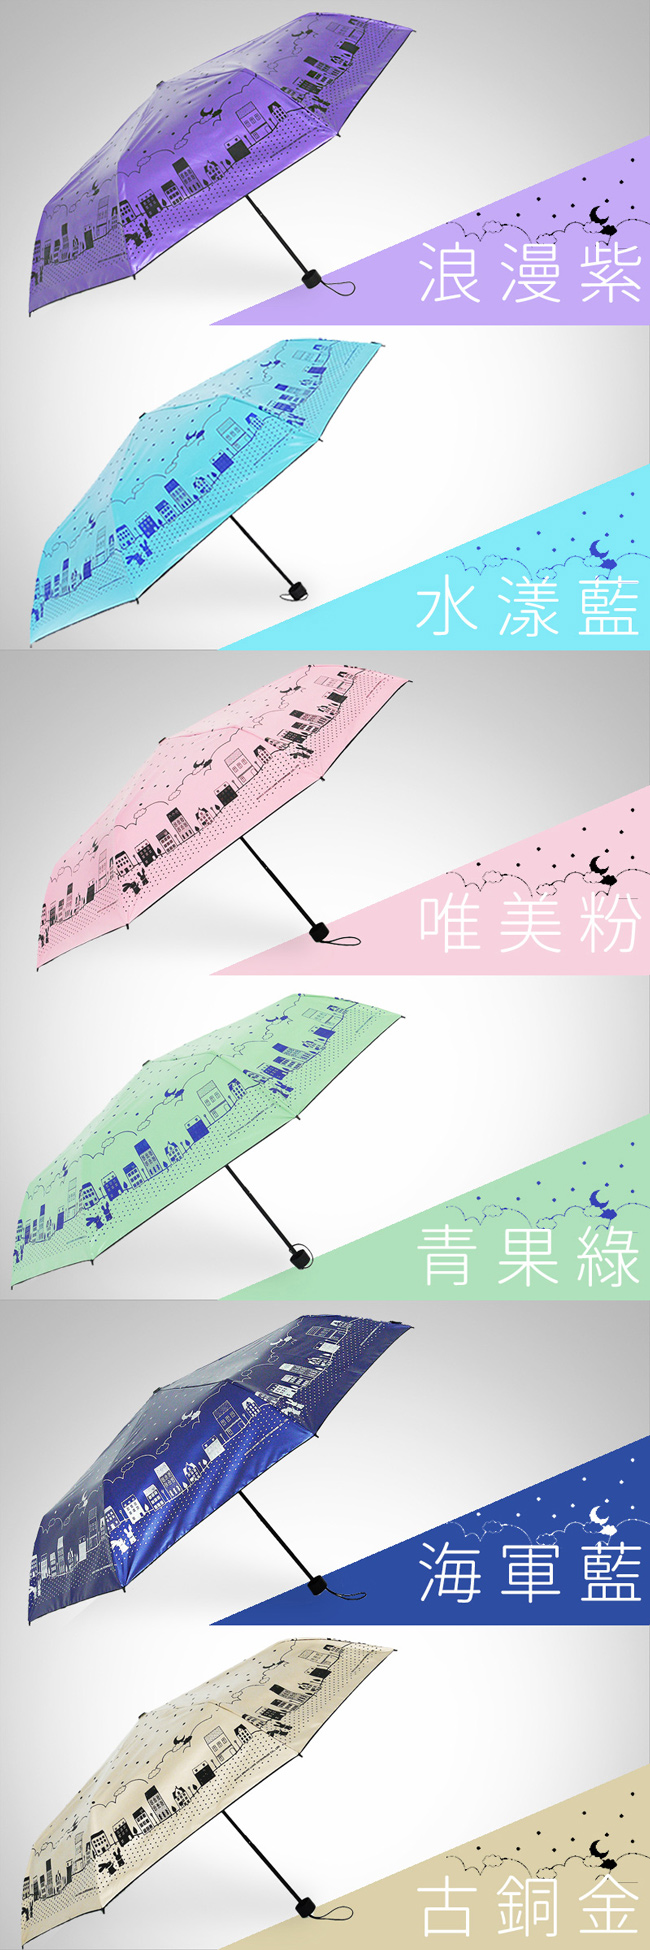 【雙龍牌】浪漫滿屋 黑膠三折傘晴雨傘/防曬抗UV防風陽傘 B6153H